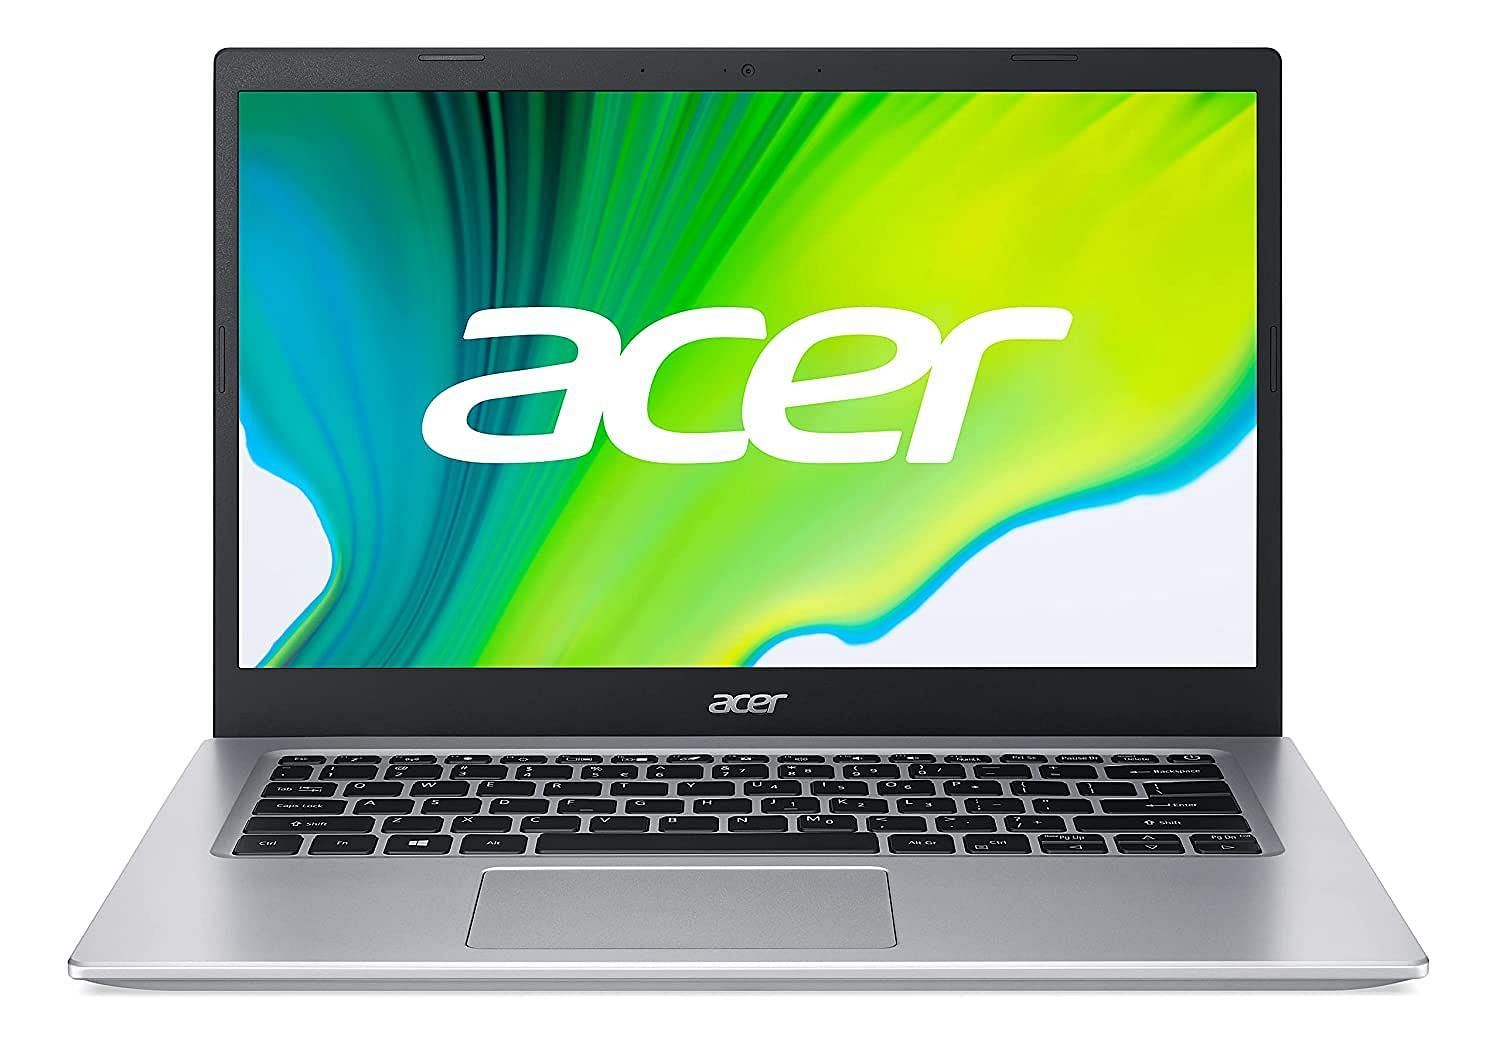 Acer Aspire 5 (Image via Acer)